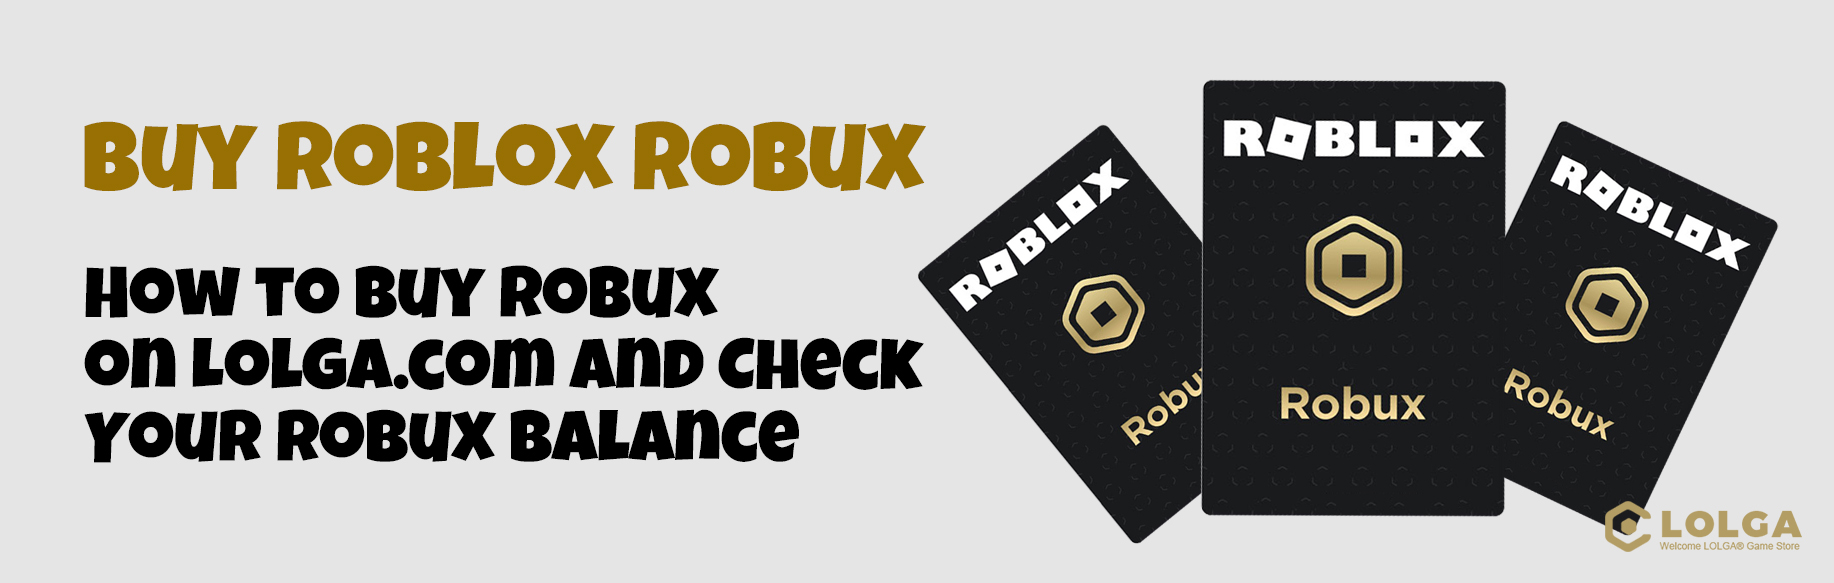 How to Buy Robux on Lolga.com and Check Your Robux Balance